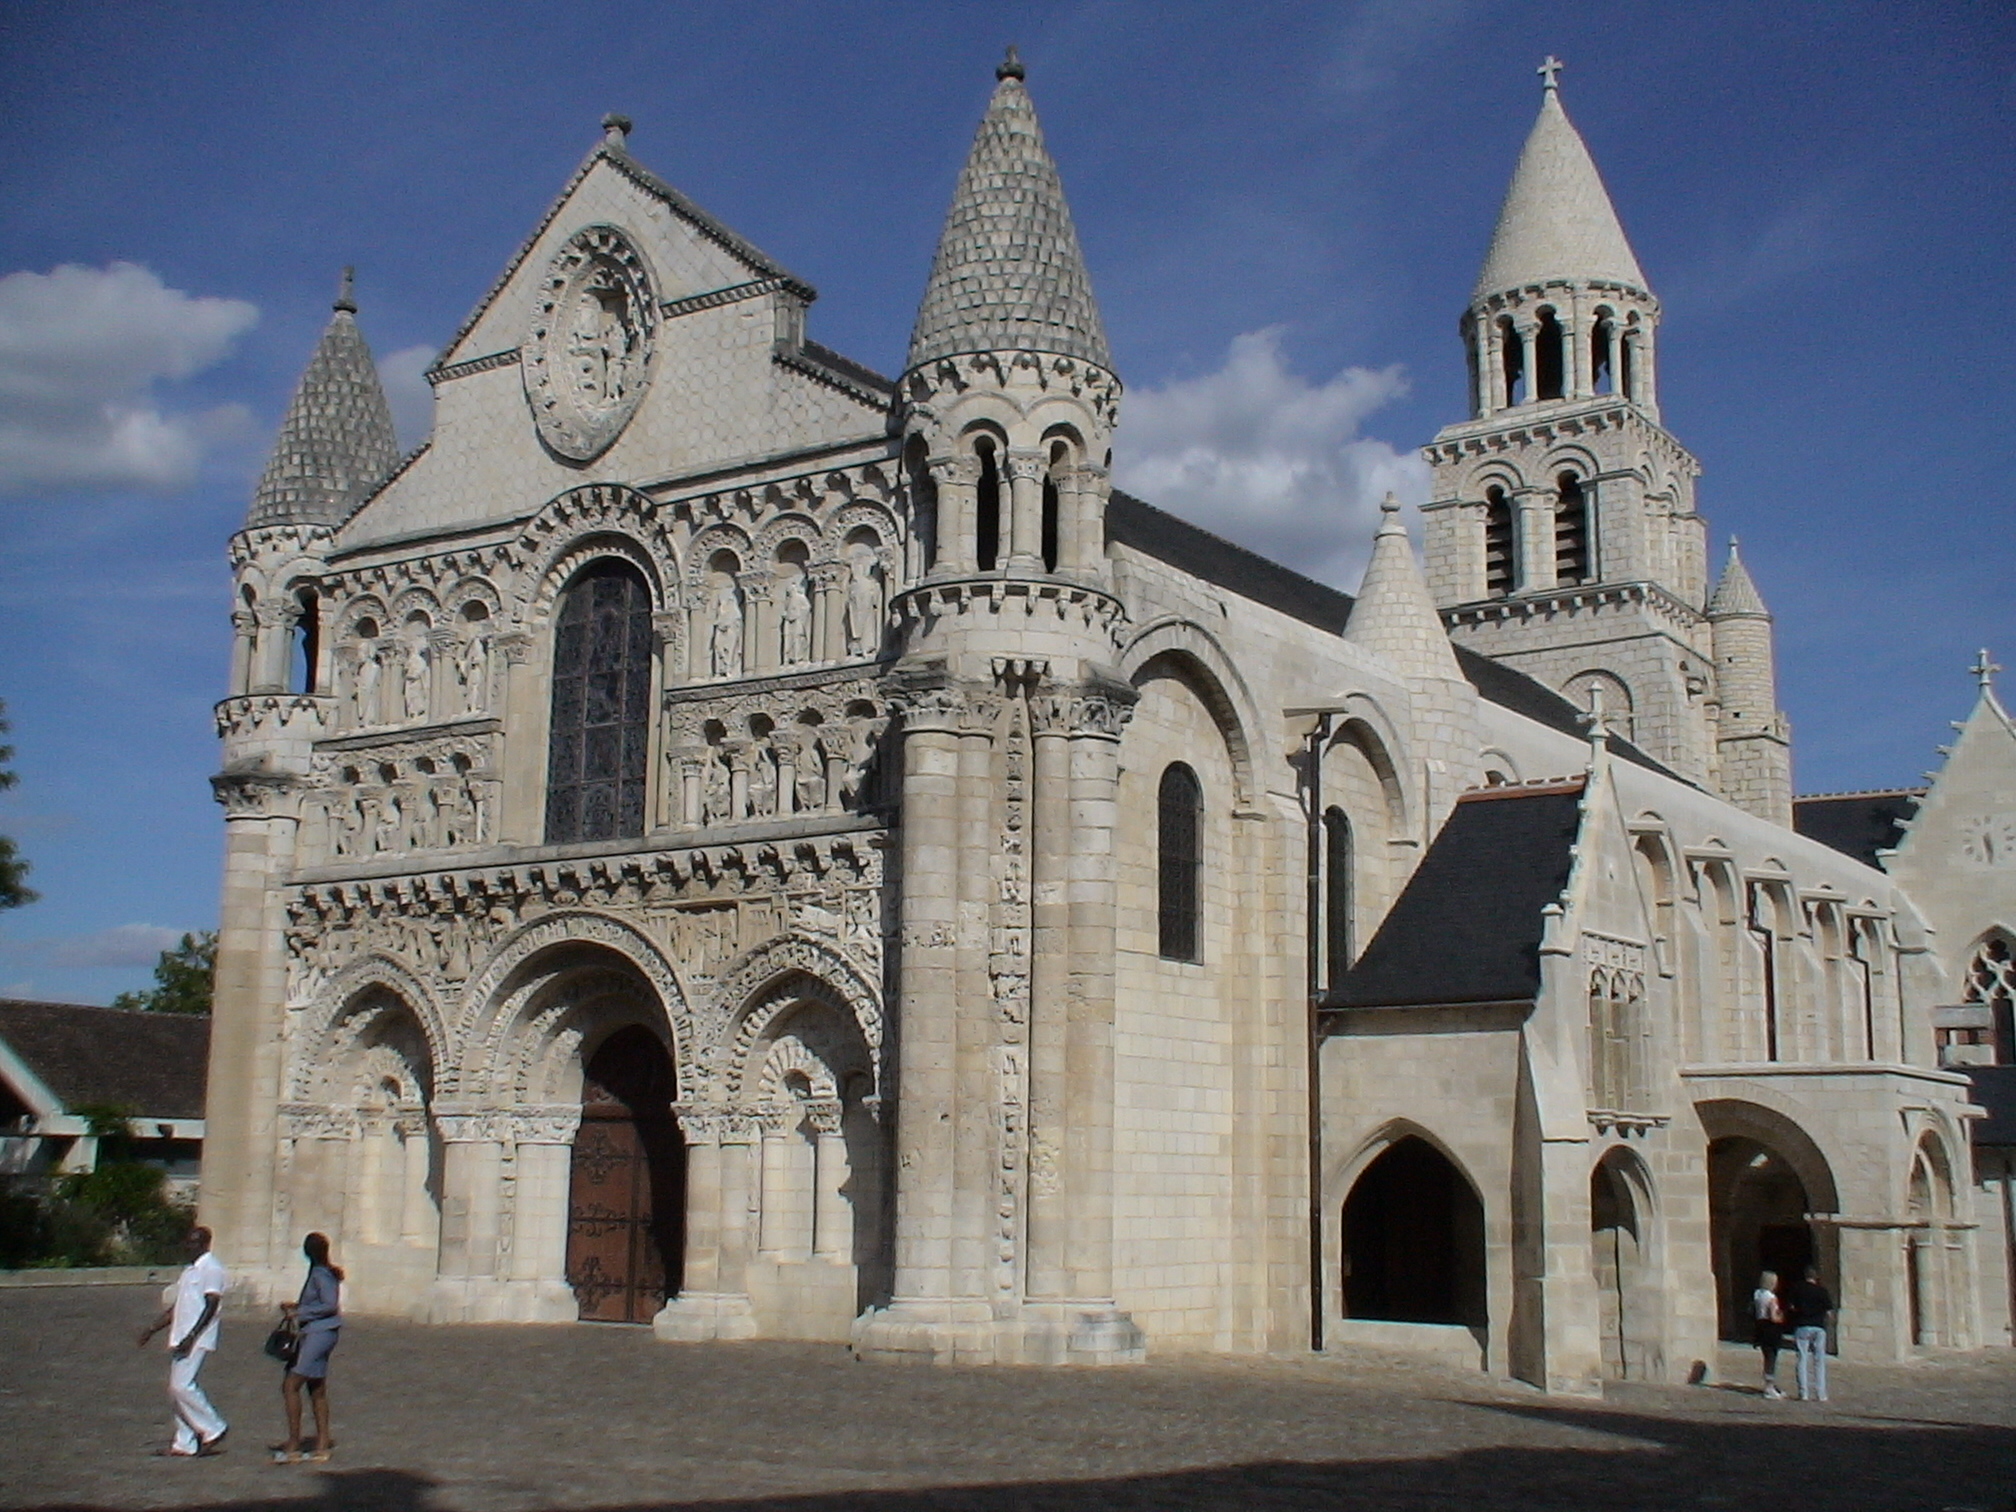 Нотр дам ля гранд. Церковь Нотр-дам-ля-Гранд, Франция. Церковь Нотр-дам ла Гранд в Пуатье. Архитектура средневековья романский храм.